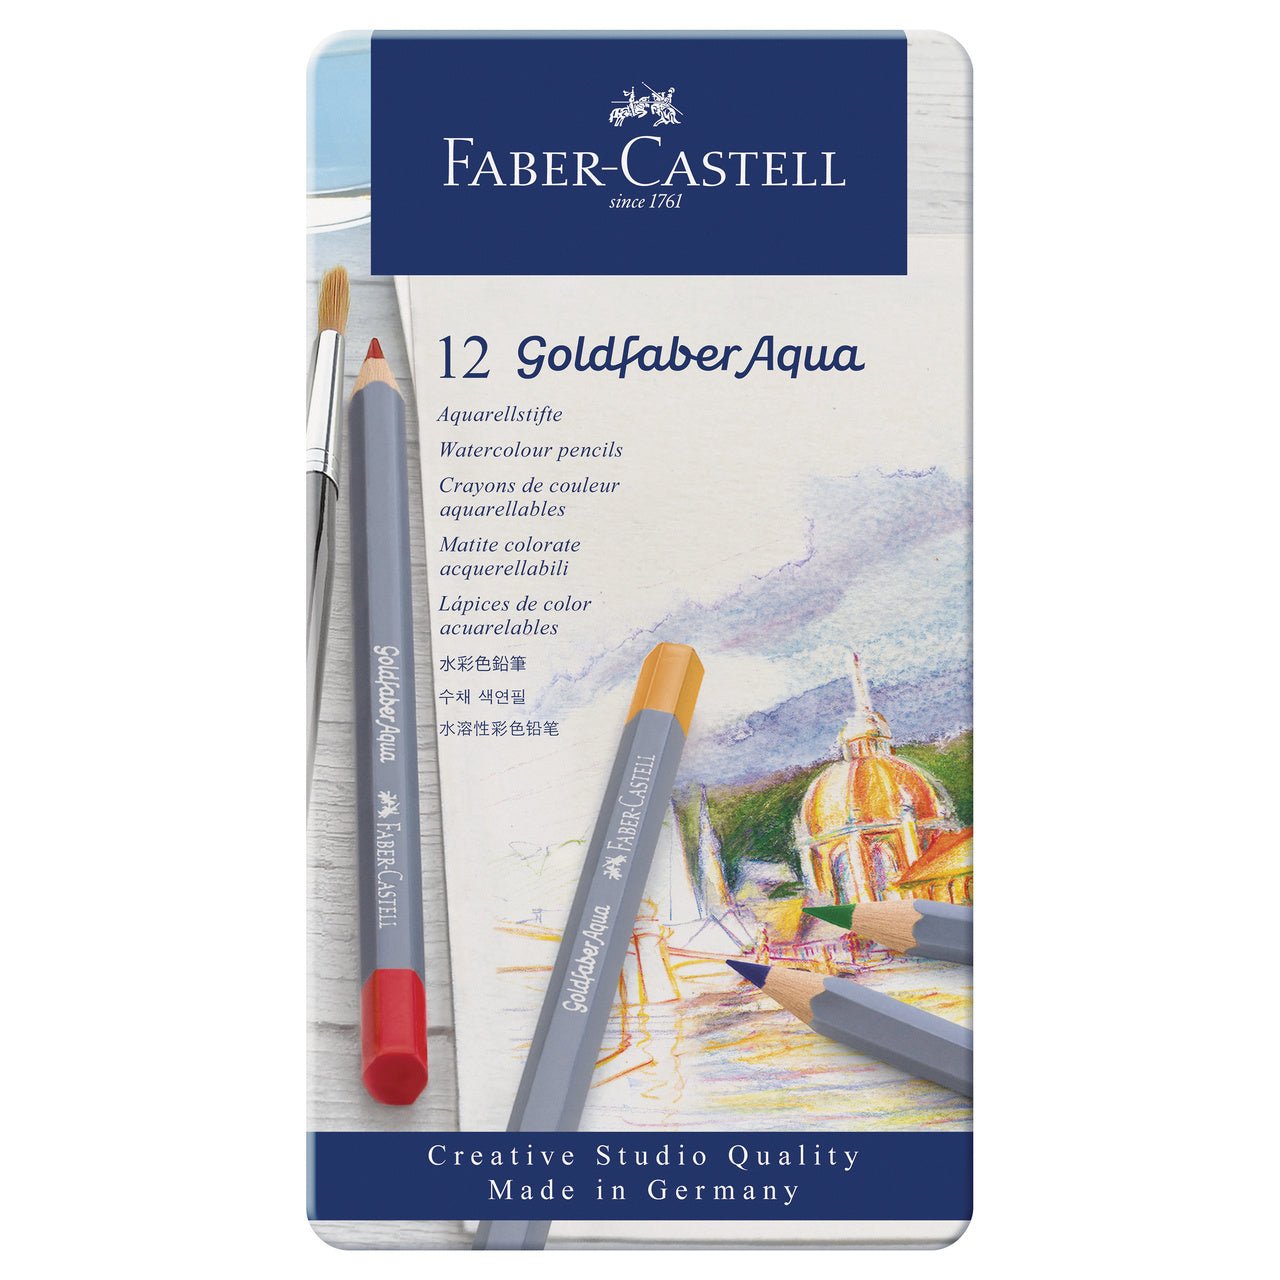 Faber-Castell Goldfaber Aqua Pencil 12 Color Set in Metal Tin - merriartist.com